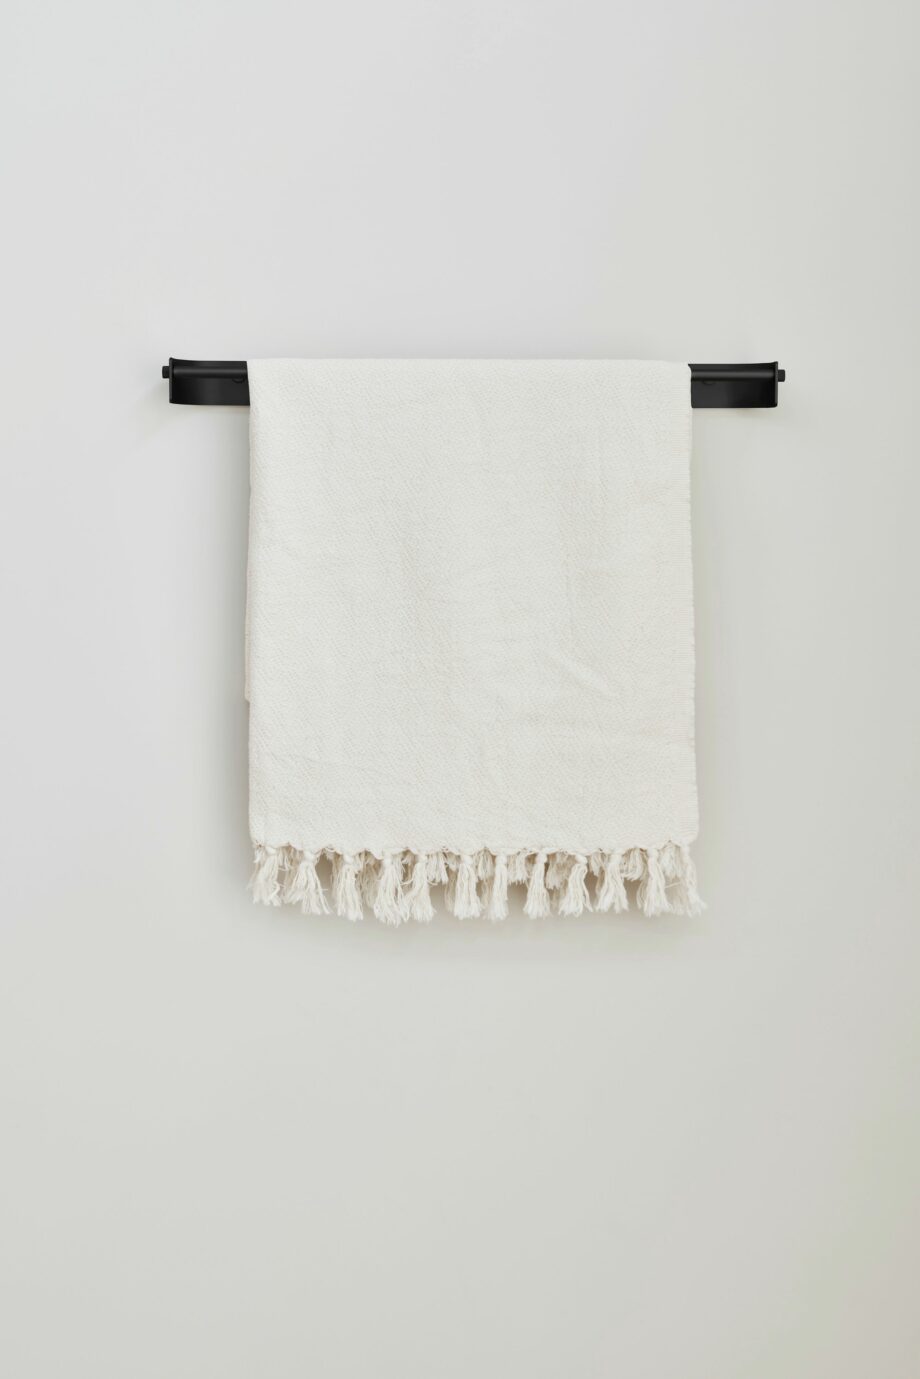 Zwarte hangende handdoekhouder voor 1 handdoek handdoek